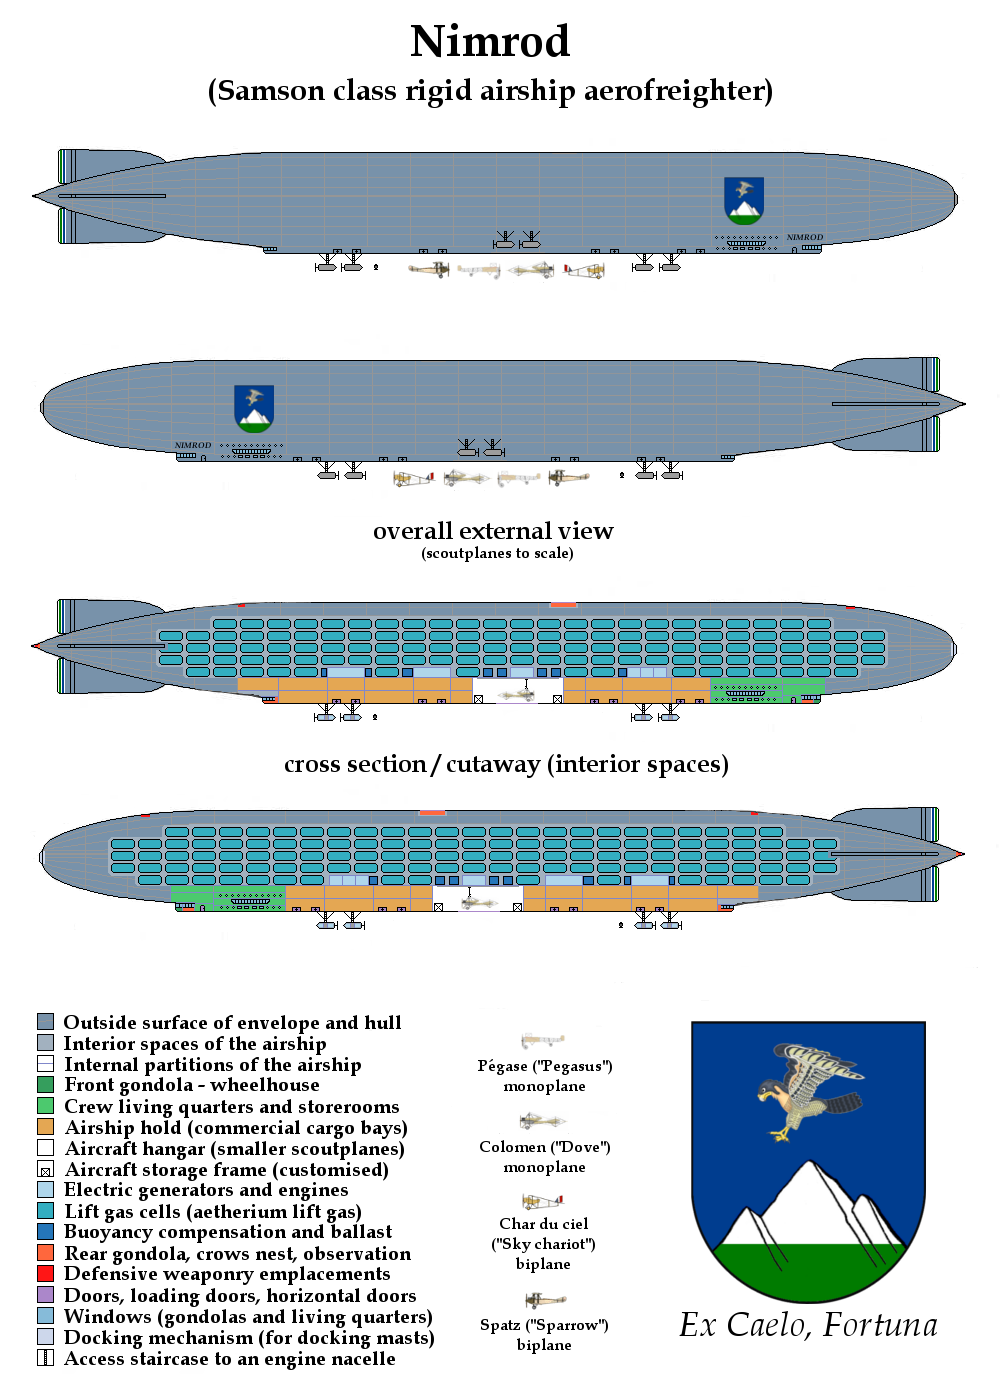 nimrod-fleet-nimrod-rigid-airship-png.552913